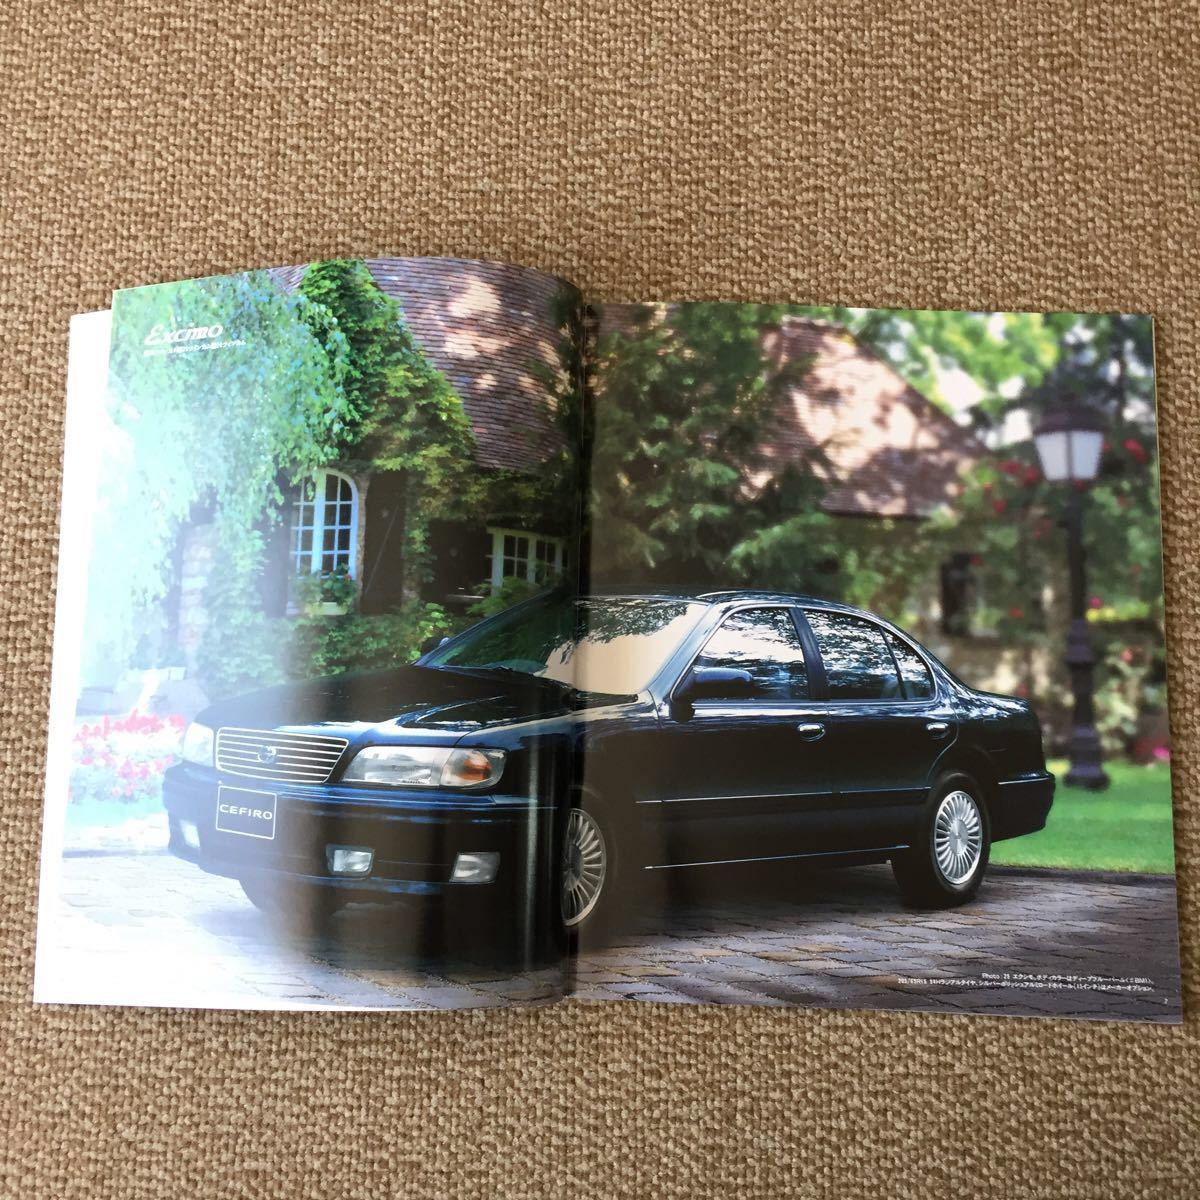  Nissan Cefiro каталог 1994 год 8 месяц 